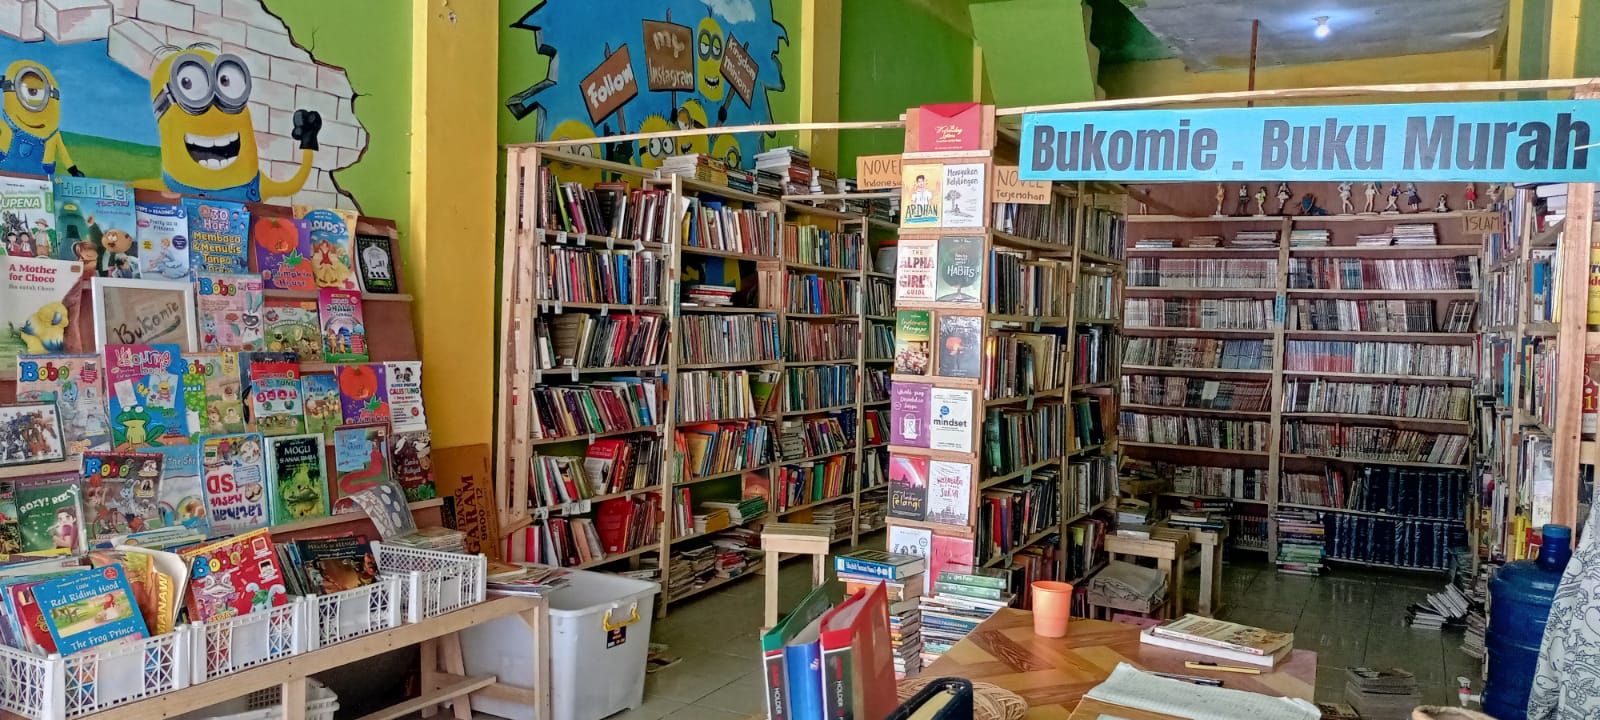 Buku-Buku Murah Itu Ada di Toko Bukomie